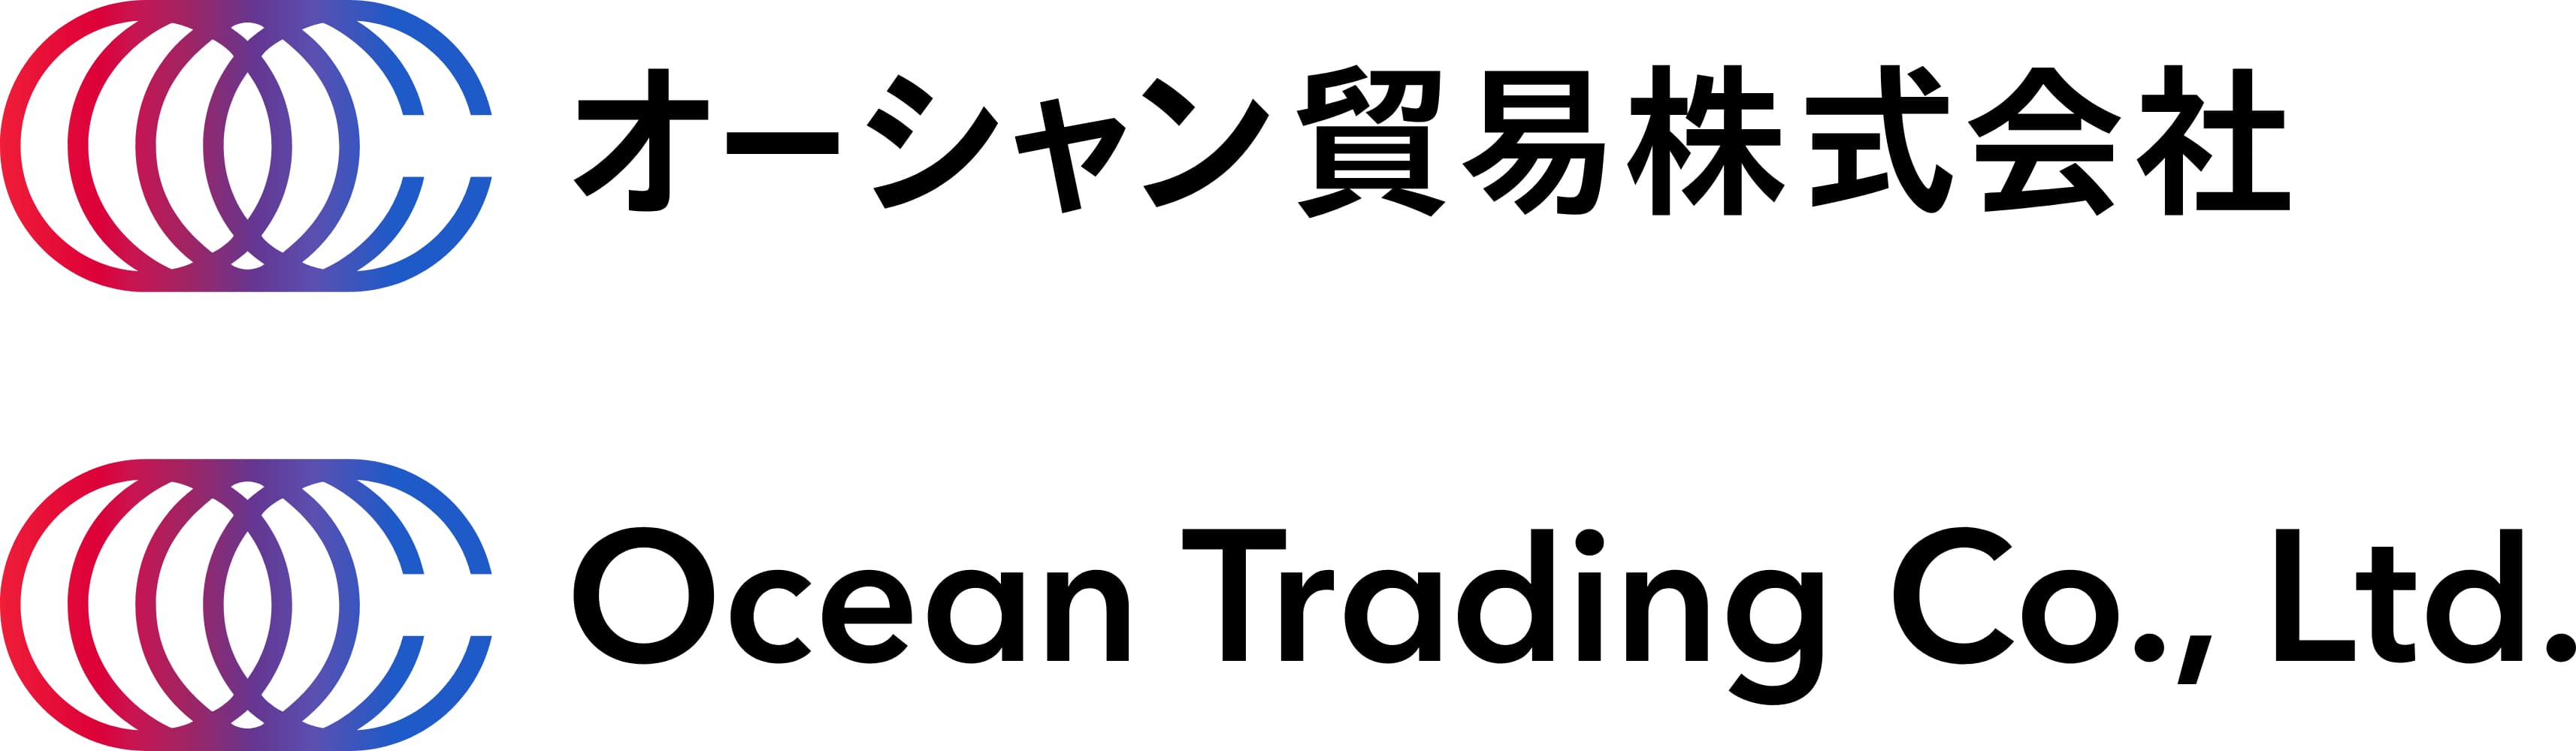 Ocean trading